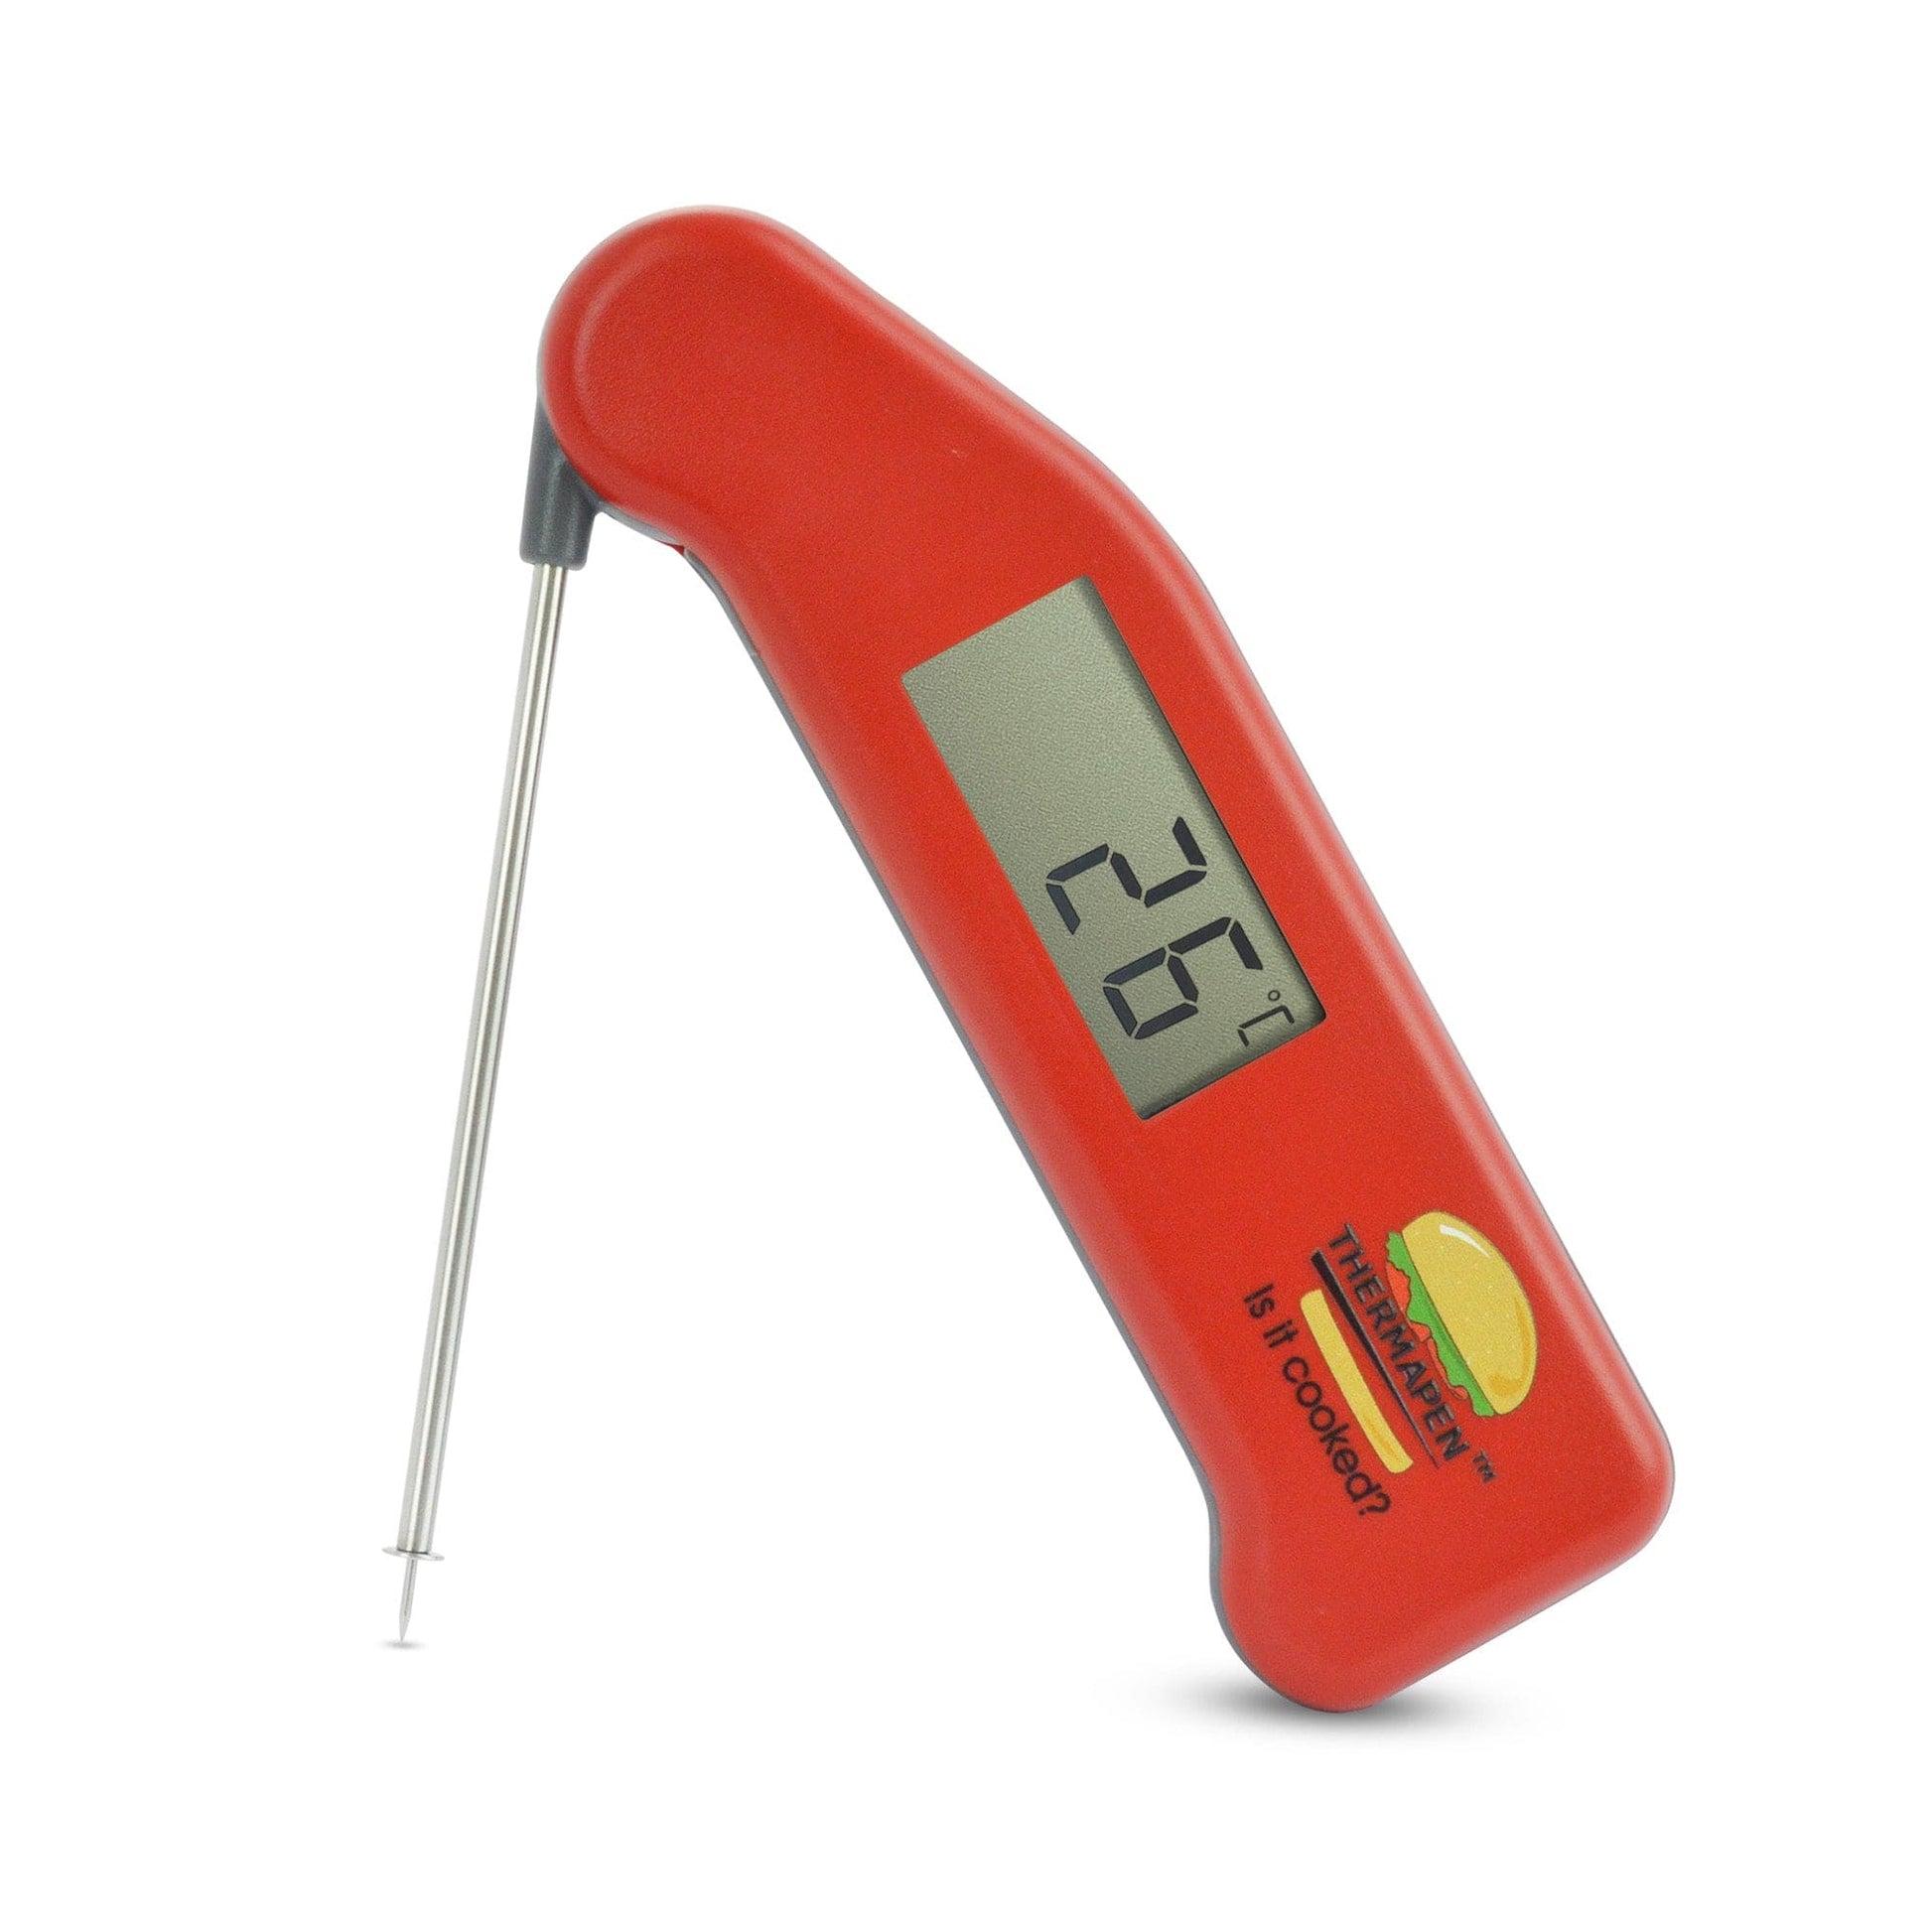 Un thermomètre numérique Thermometre.fr avec une poignée rouge.